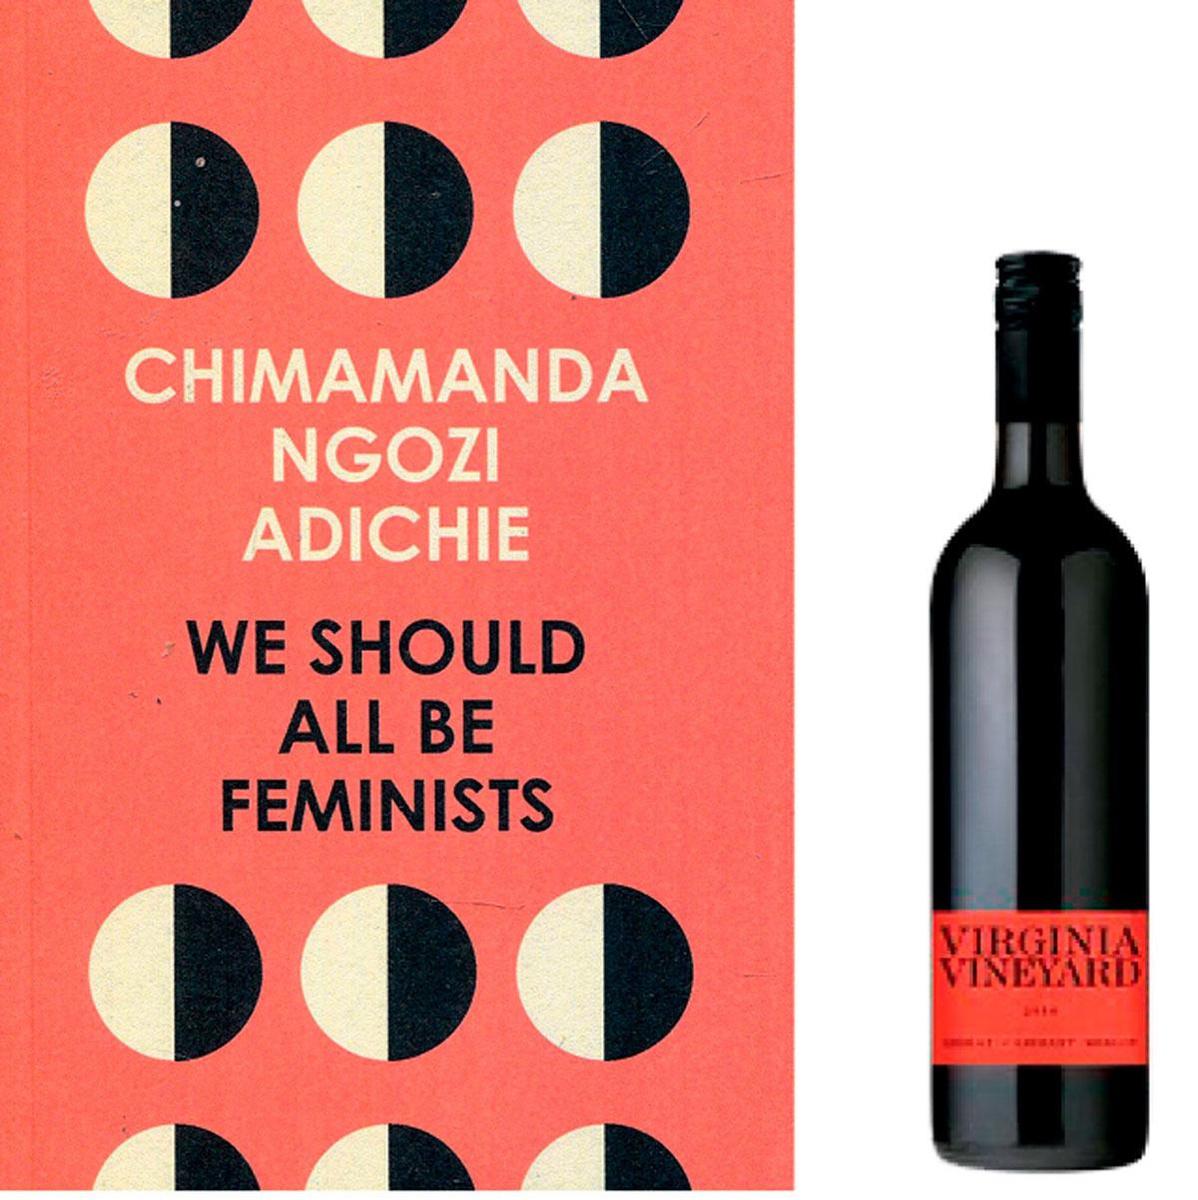 Een goed boek en een glas wijn, beide kun je online bestellen op de webshop van Luddites, de nieuwe wijn- en boekenbar in Antwerpen. We Should All Be Feminists (9,95 euro) van Chimamanda Ngozi Adichie is alvast een aanrader. shop.luddites.eu